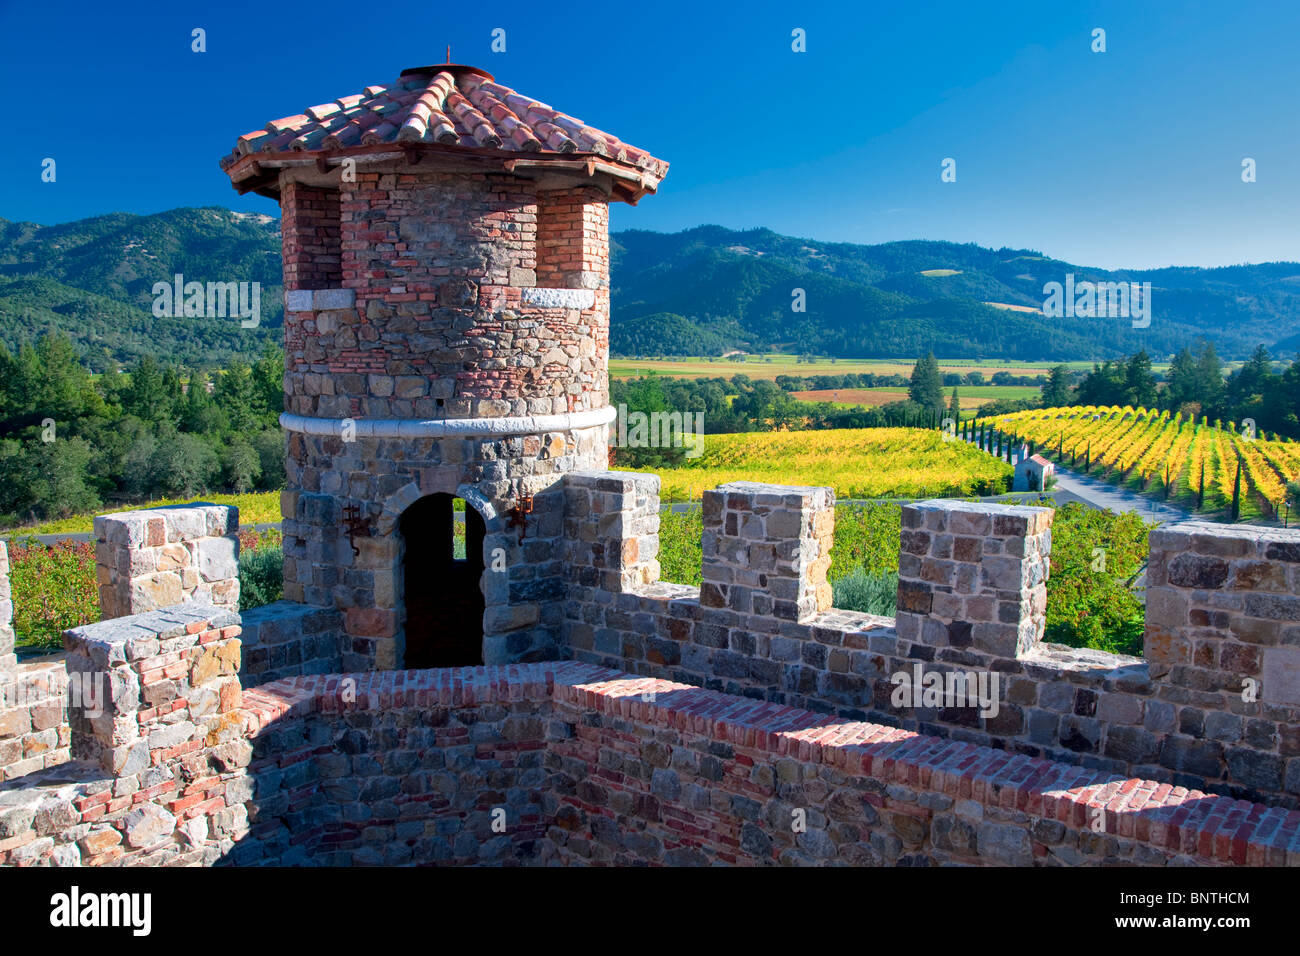 Castle turret at Castello di Amorosa. Napa Valley, California. Property released Stock Photo